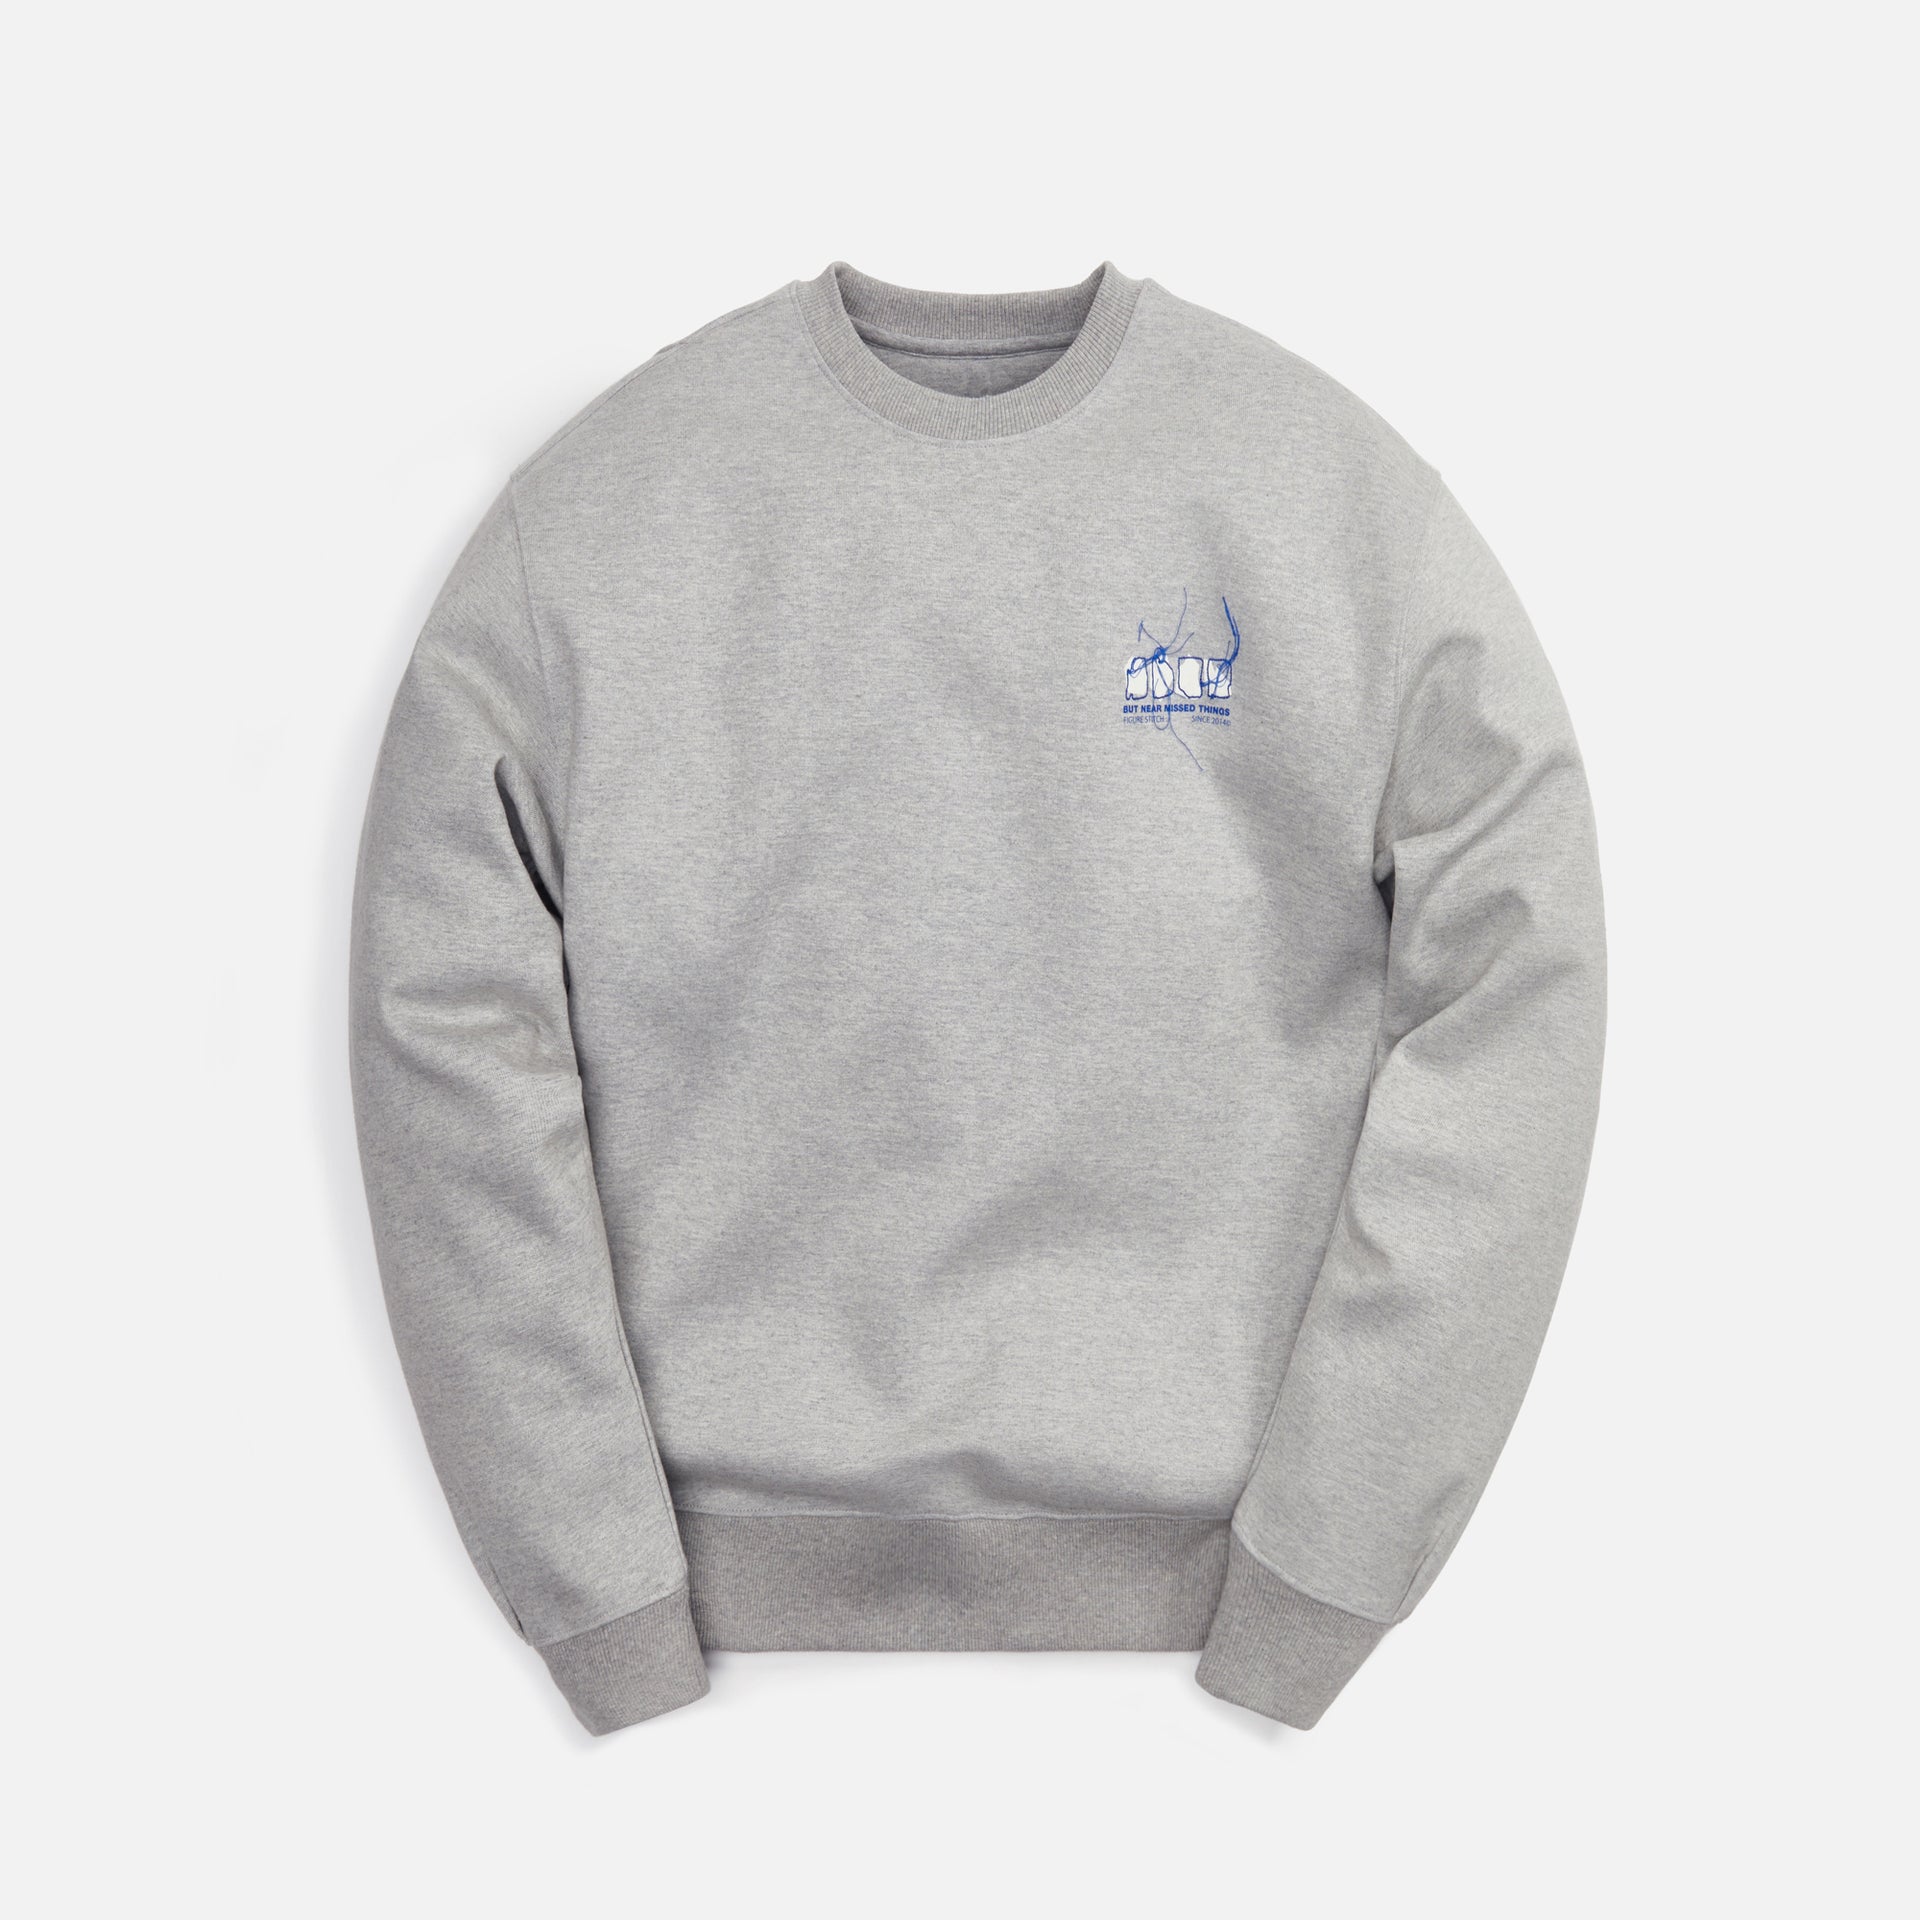 Ader Error Crewneck Sweatshirt - Grey